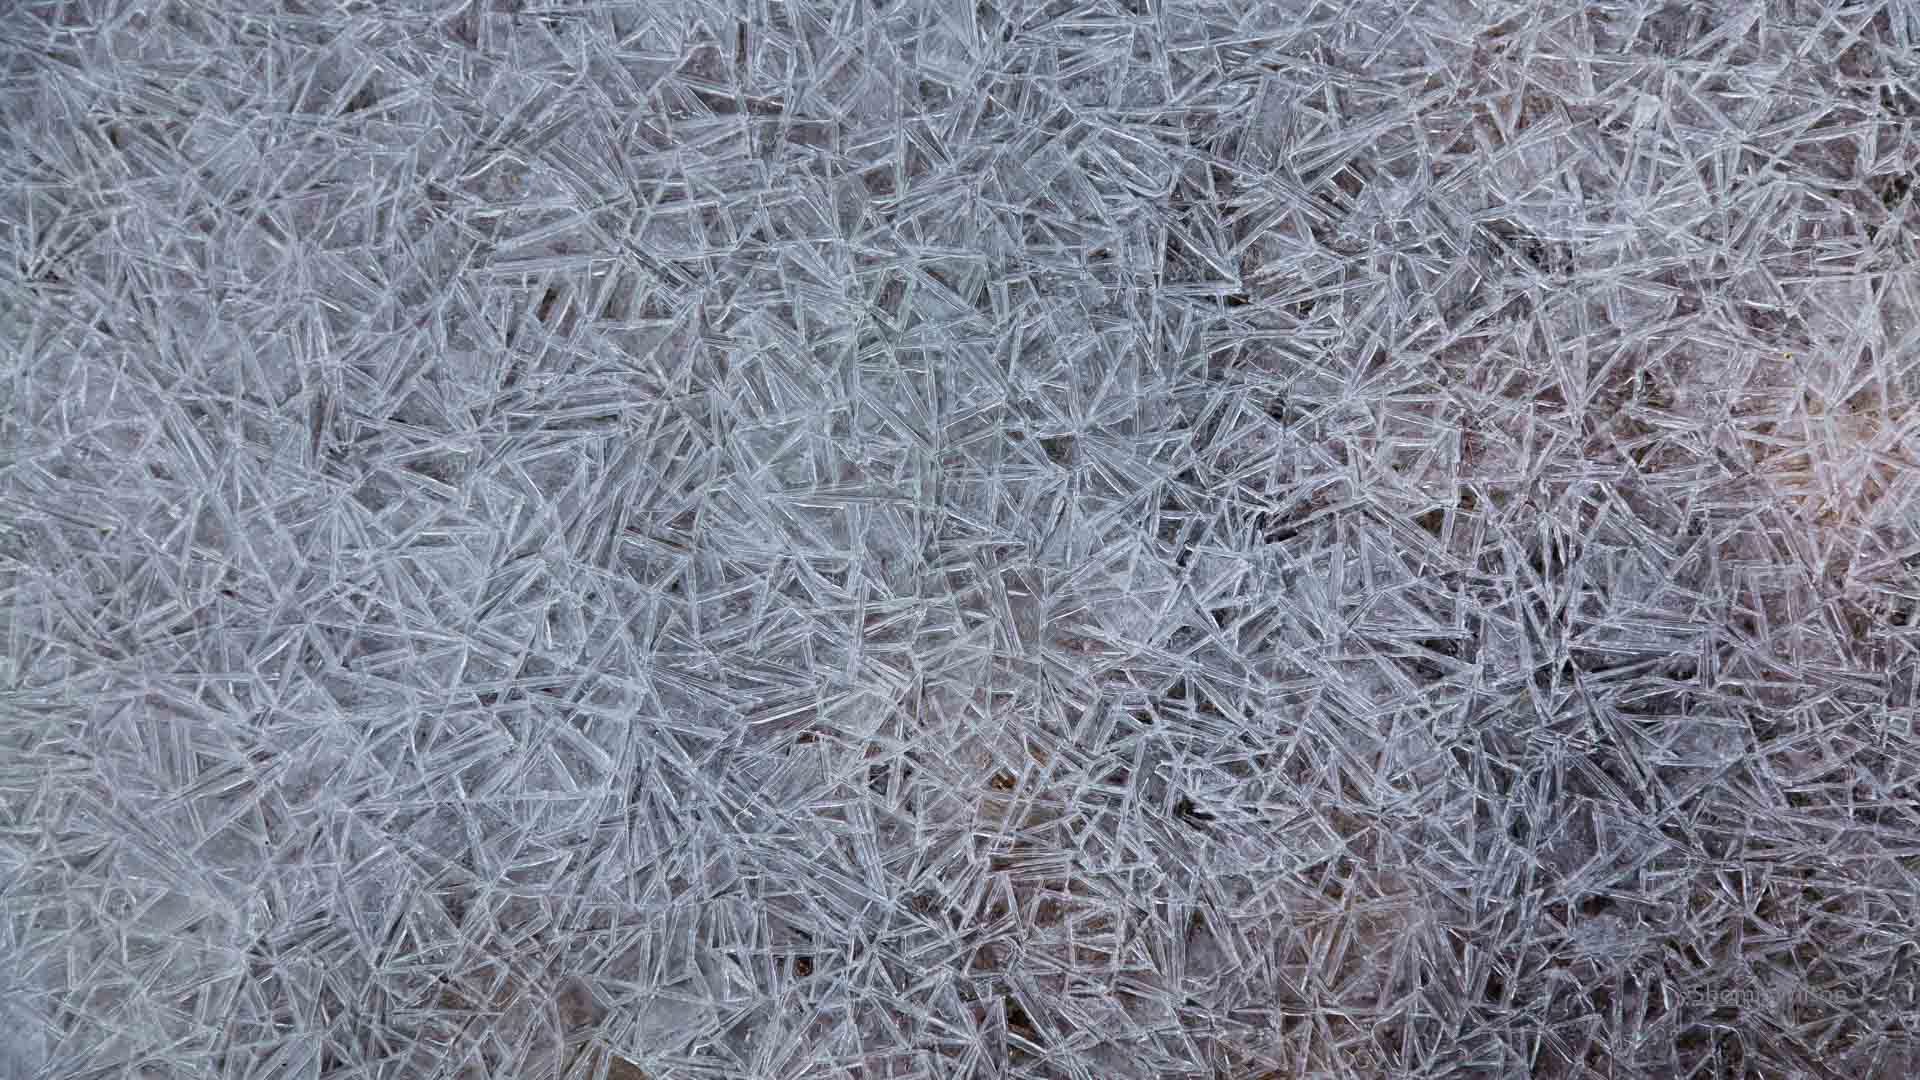 geometric pattern in a sheet of ice